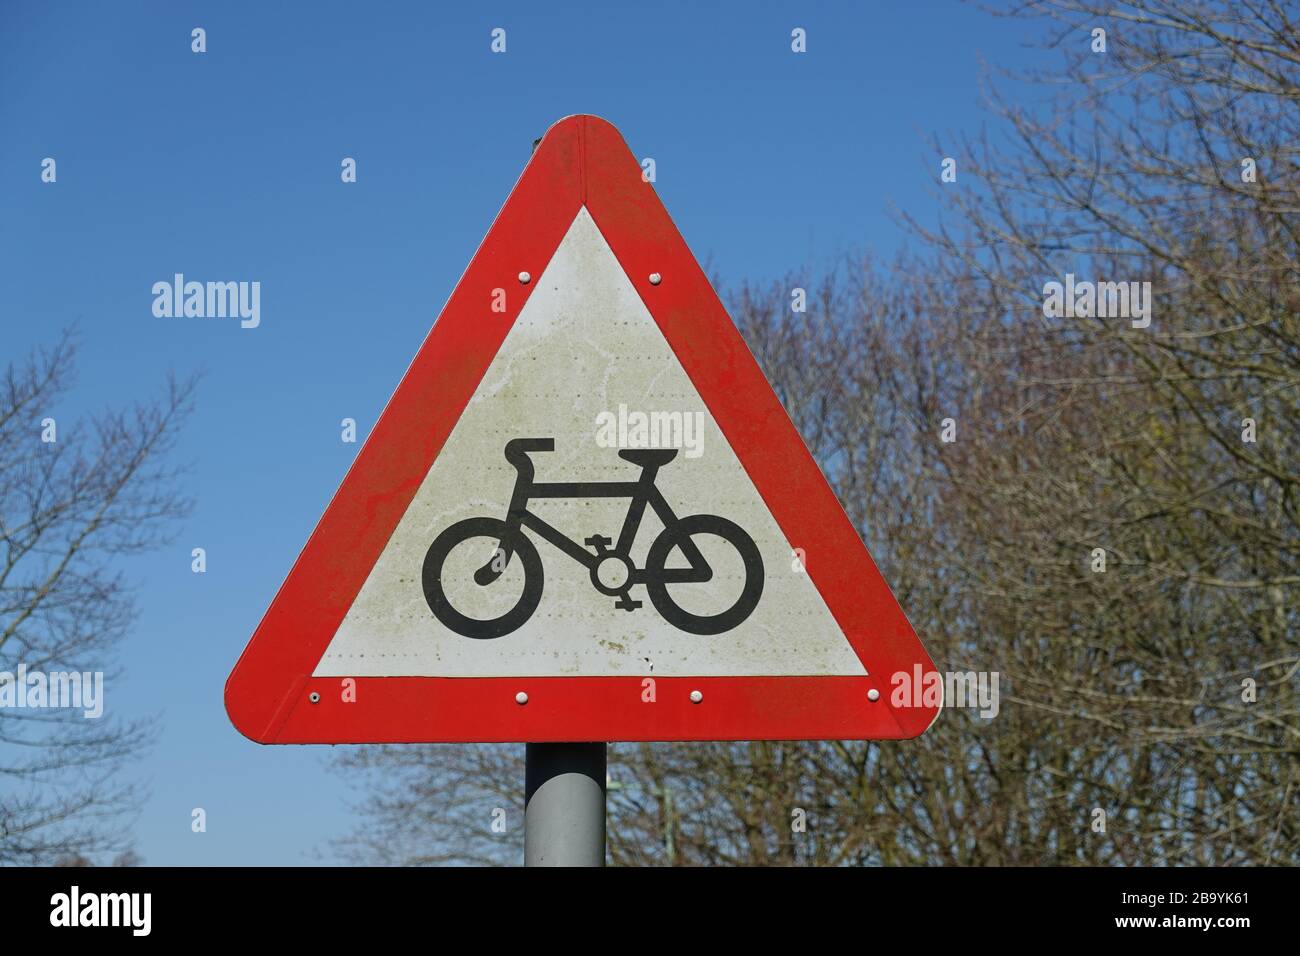 Martlesham Heath, Suffolk - 25. März 2020: Achtung, Warnschild für Radfahrer in der Nähe einer Schule. Stockfoto